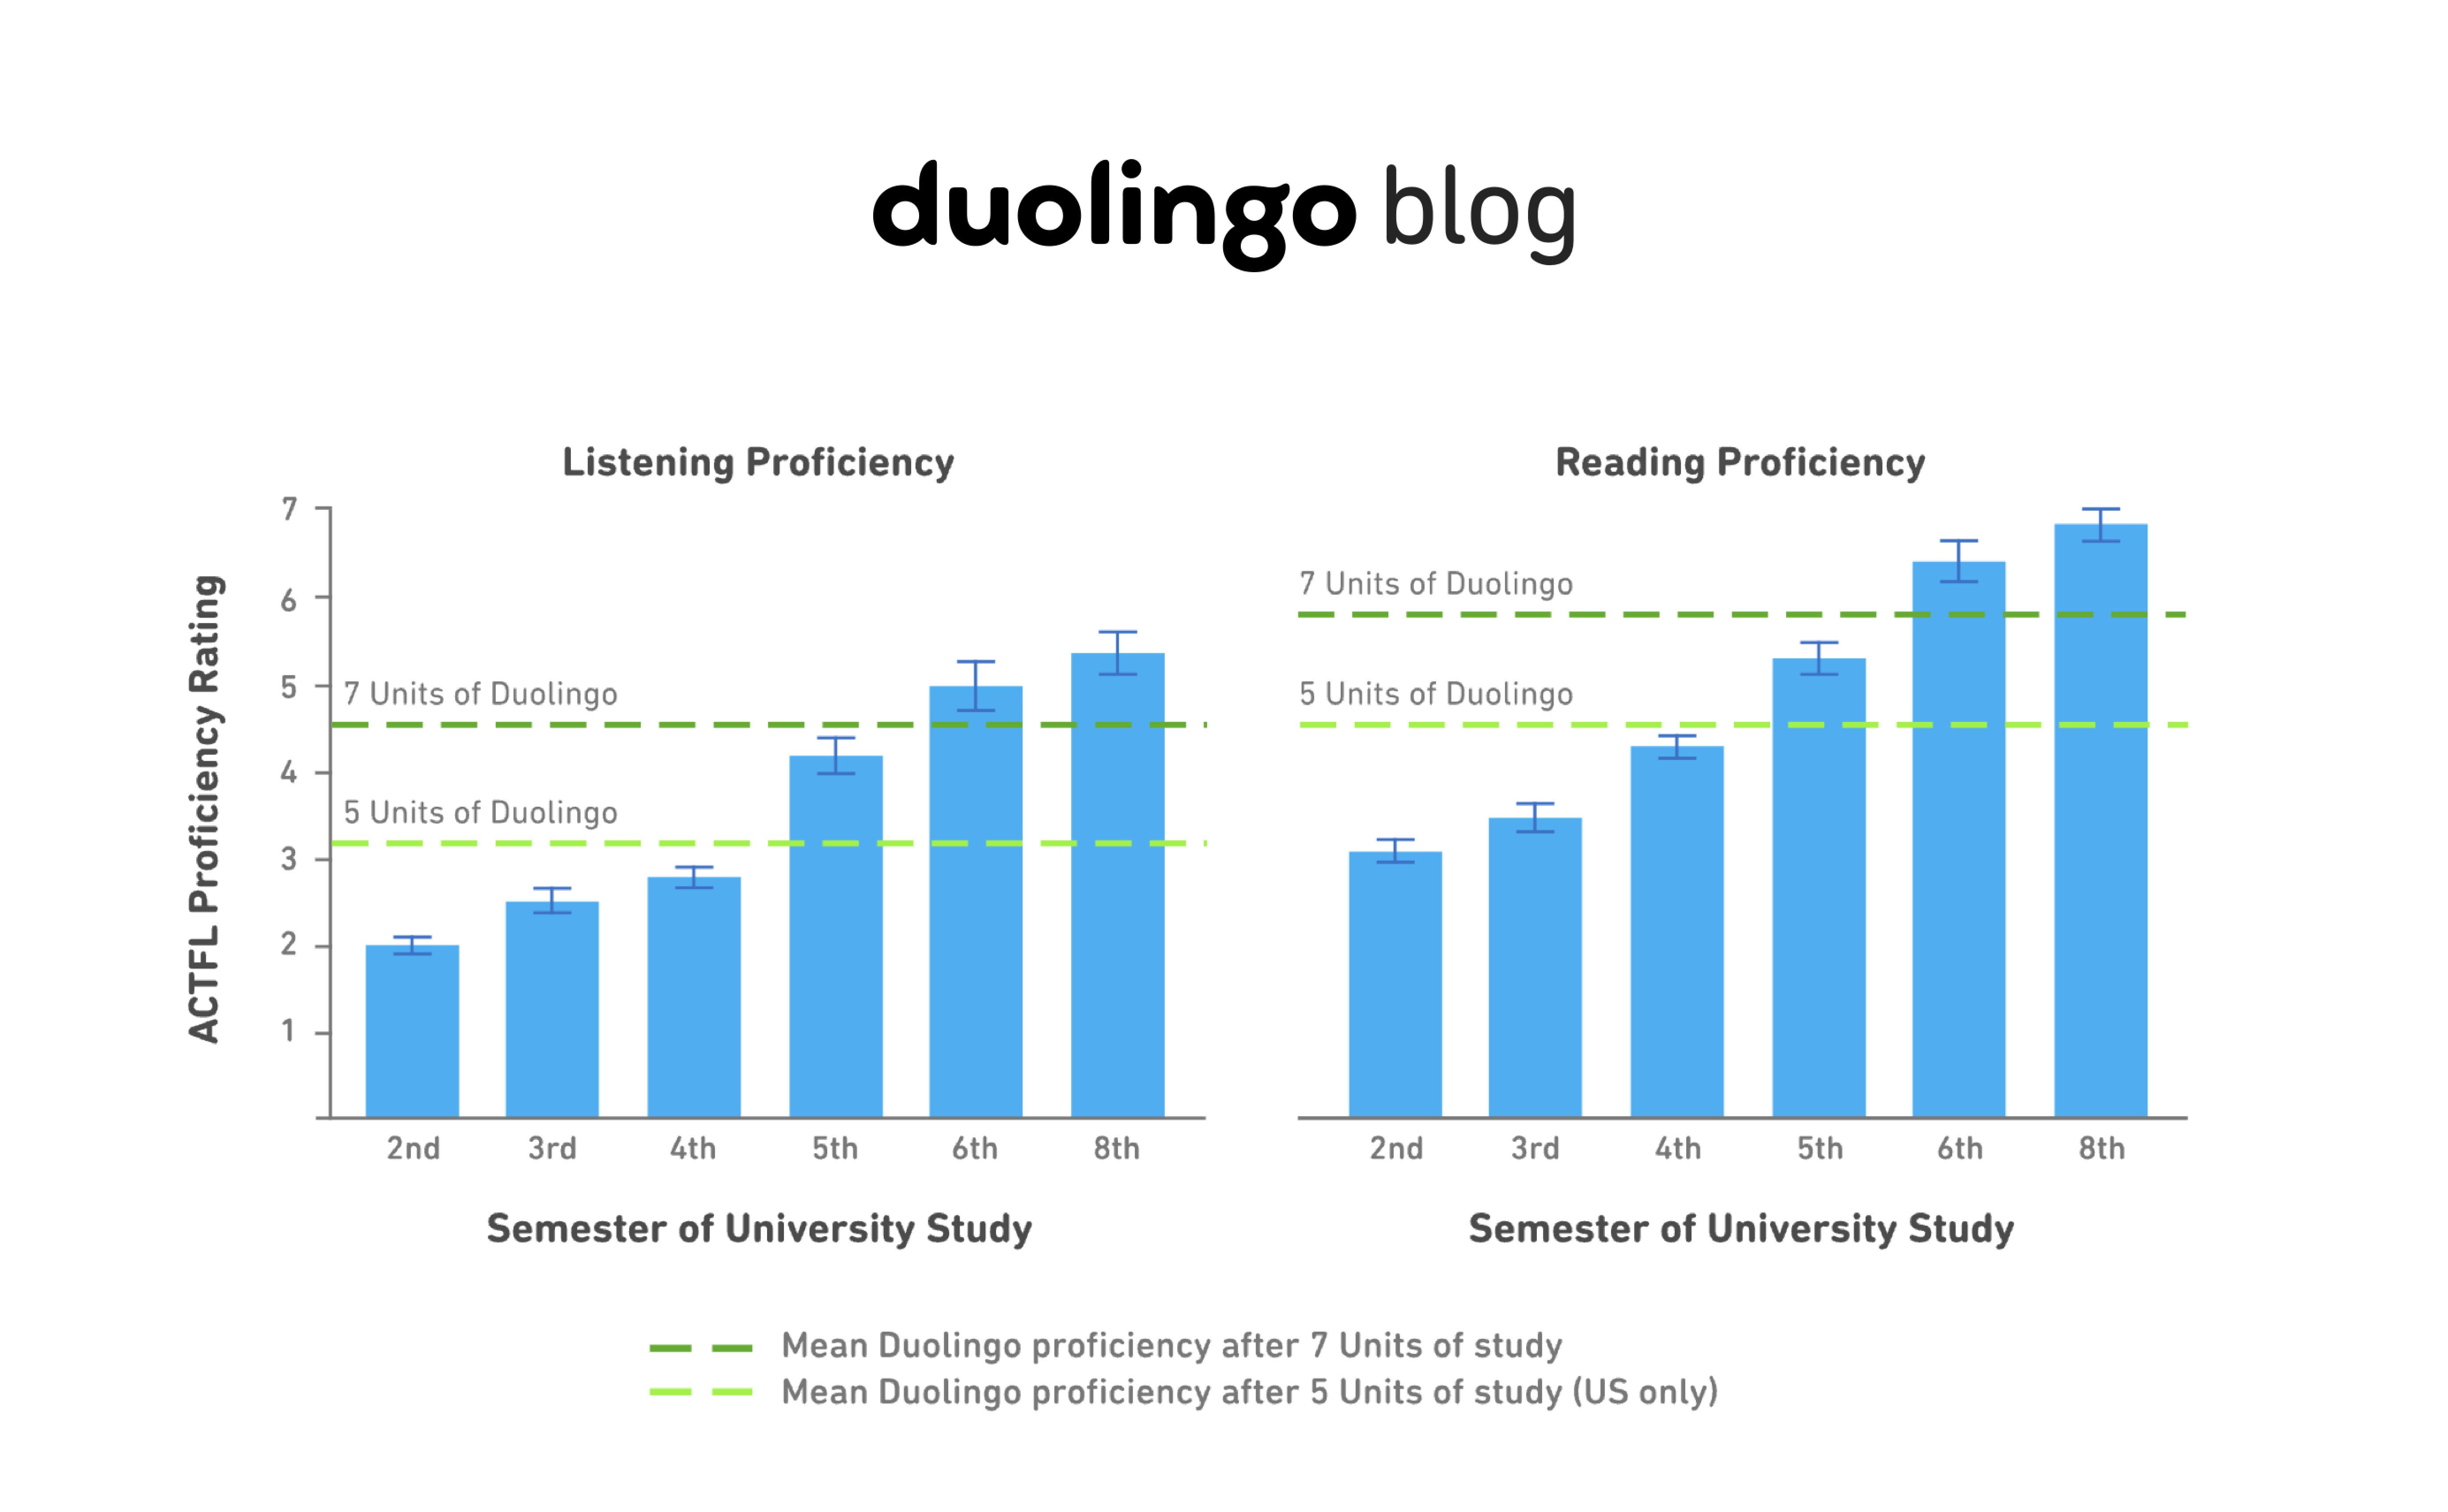 Duolingo-blog-data-analysis